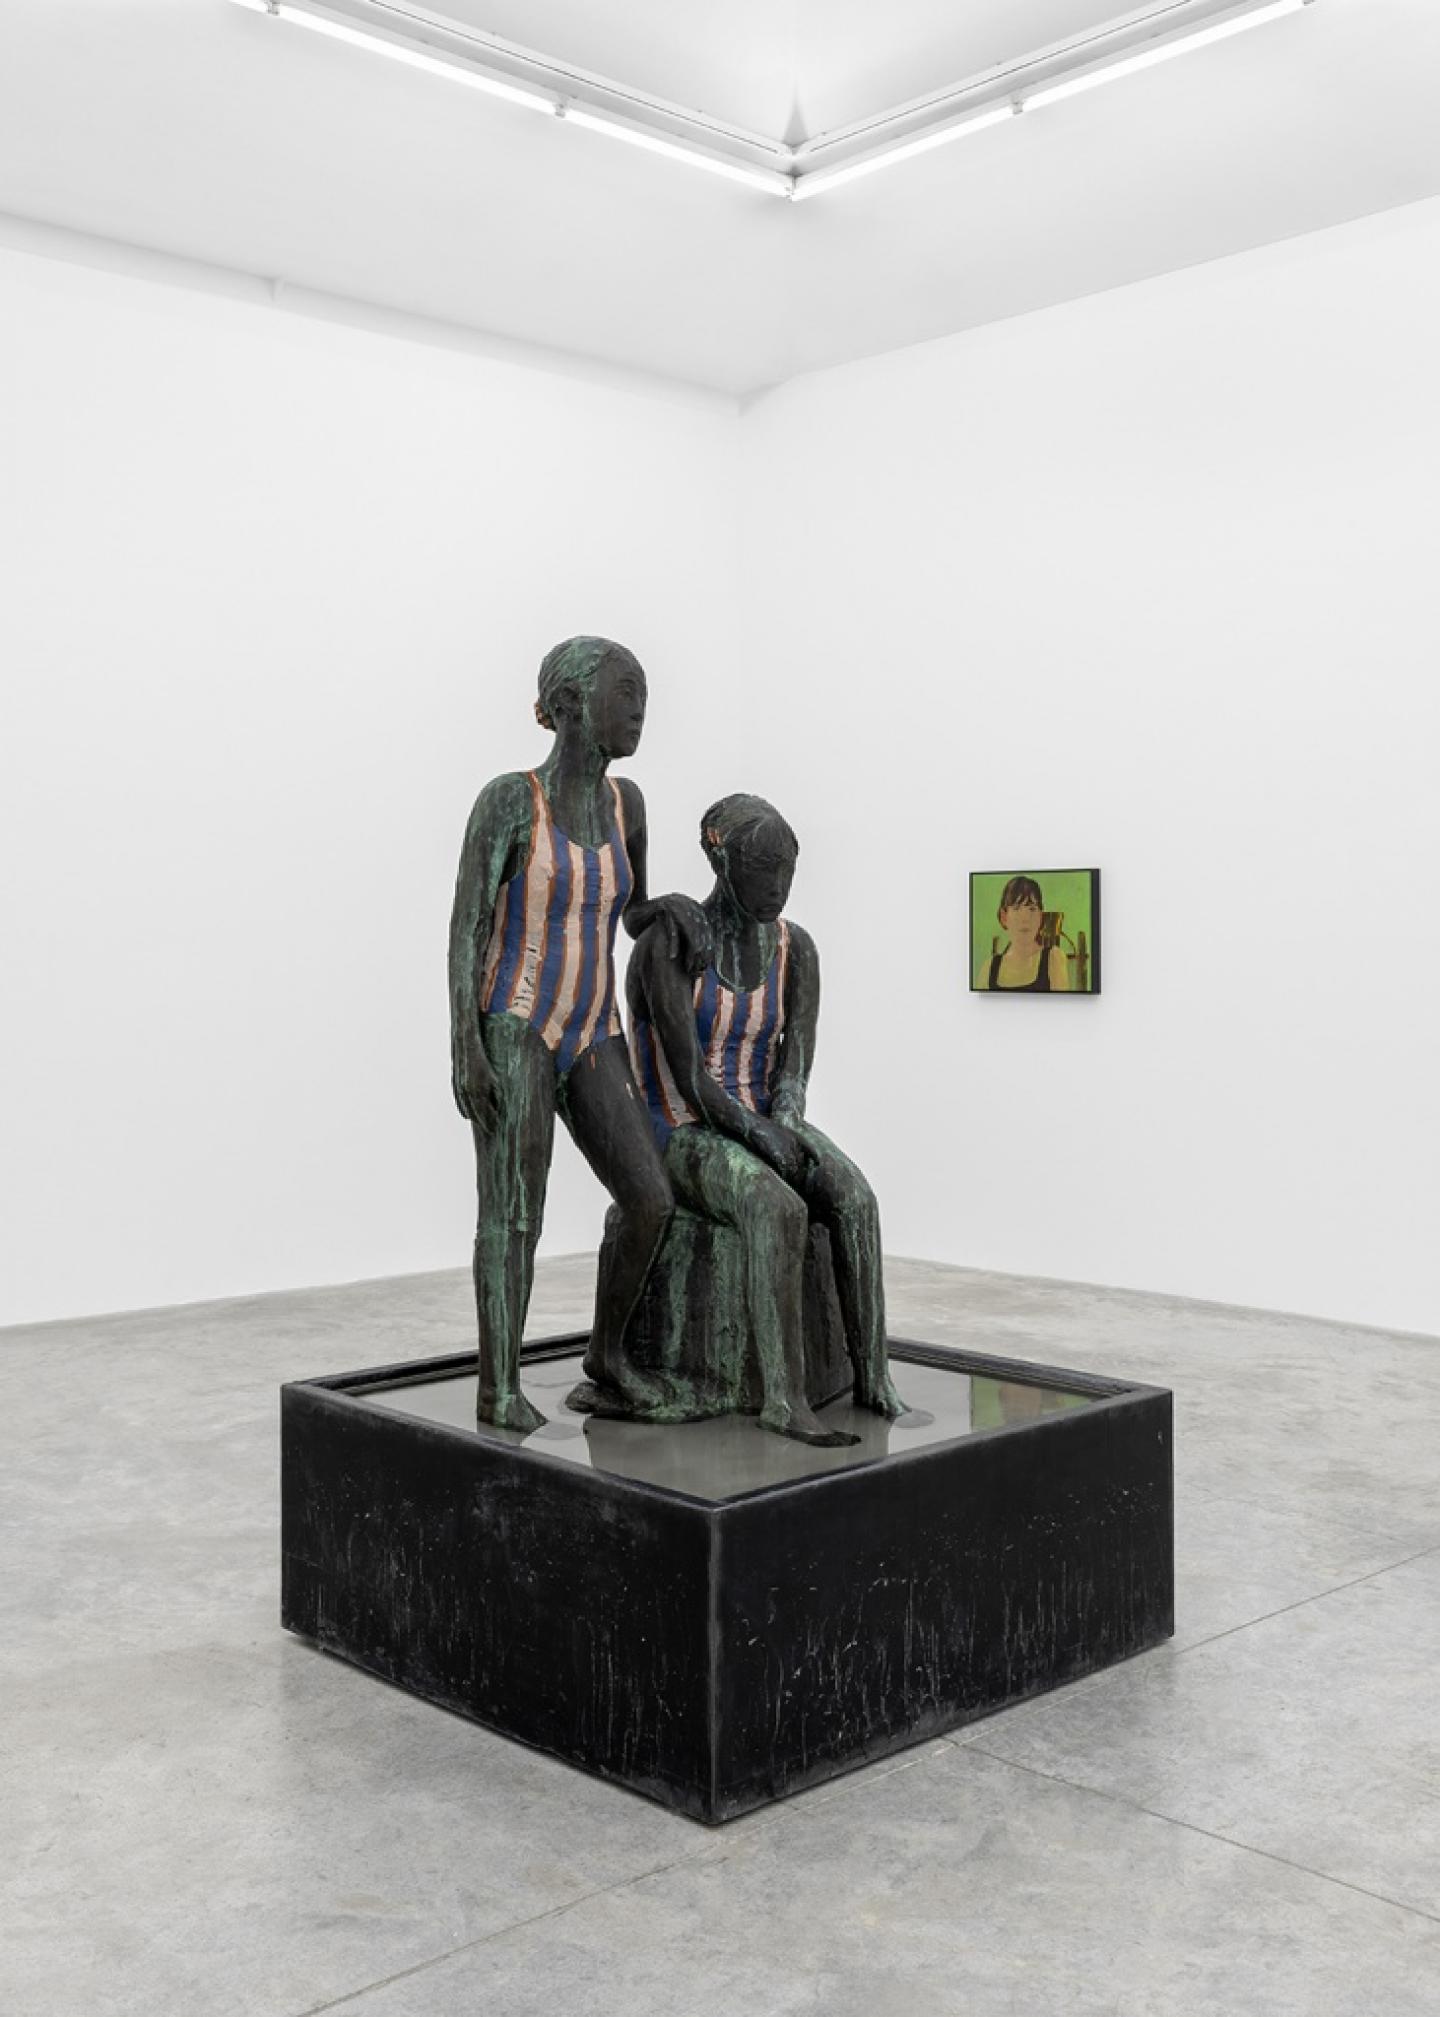 Claire Tabouret, Deux baigneuses, 2021, Painted bronze fountain, 206,4x121,9x121,9 cm, @Almin Rech